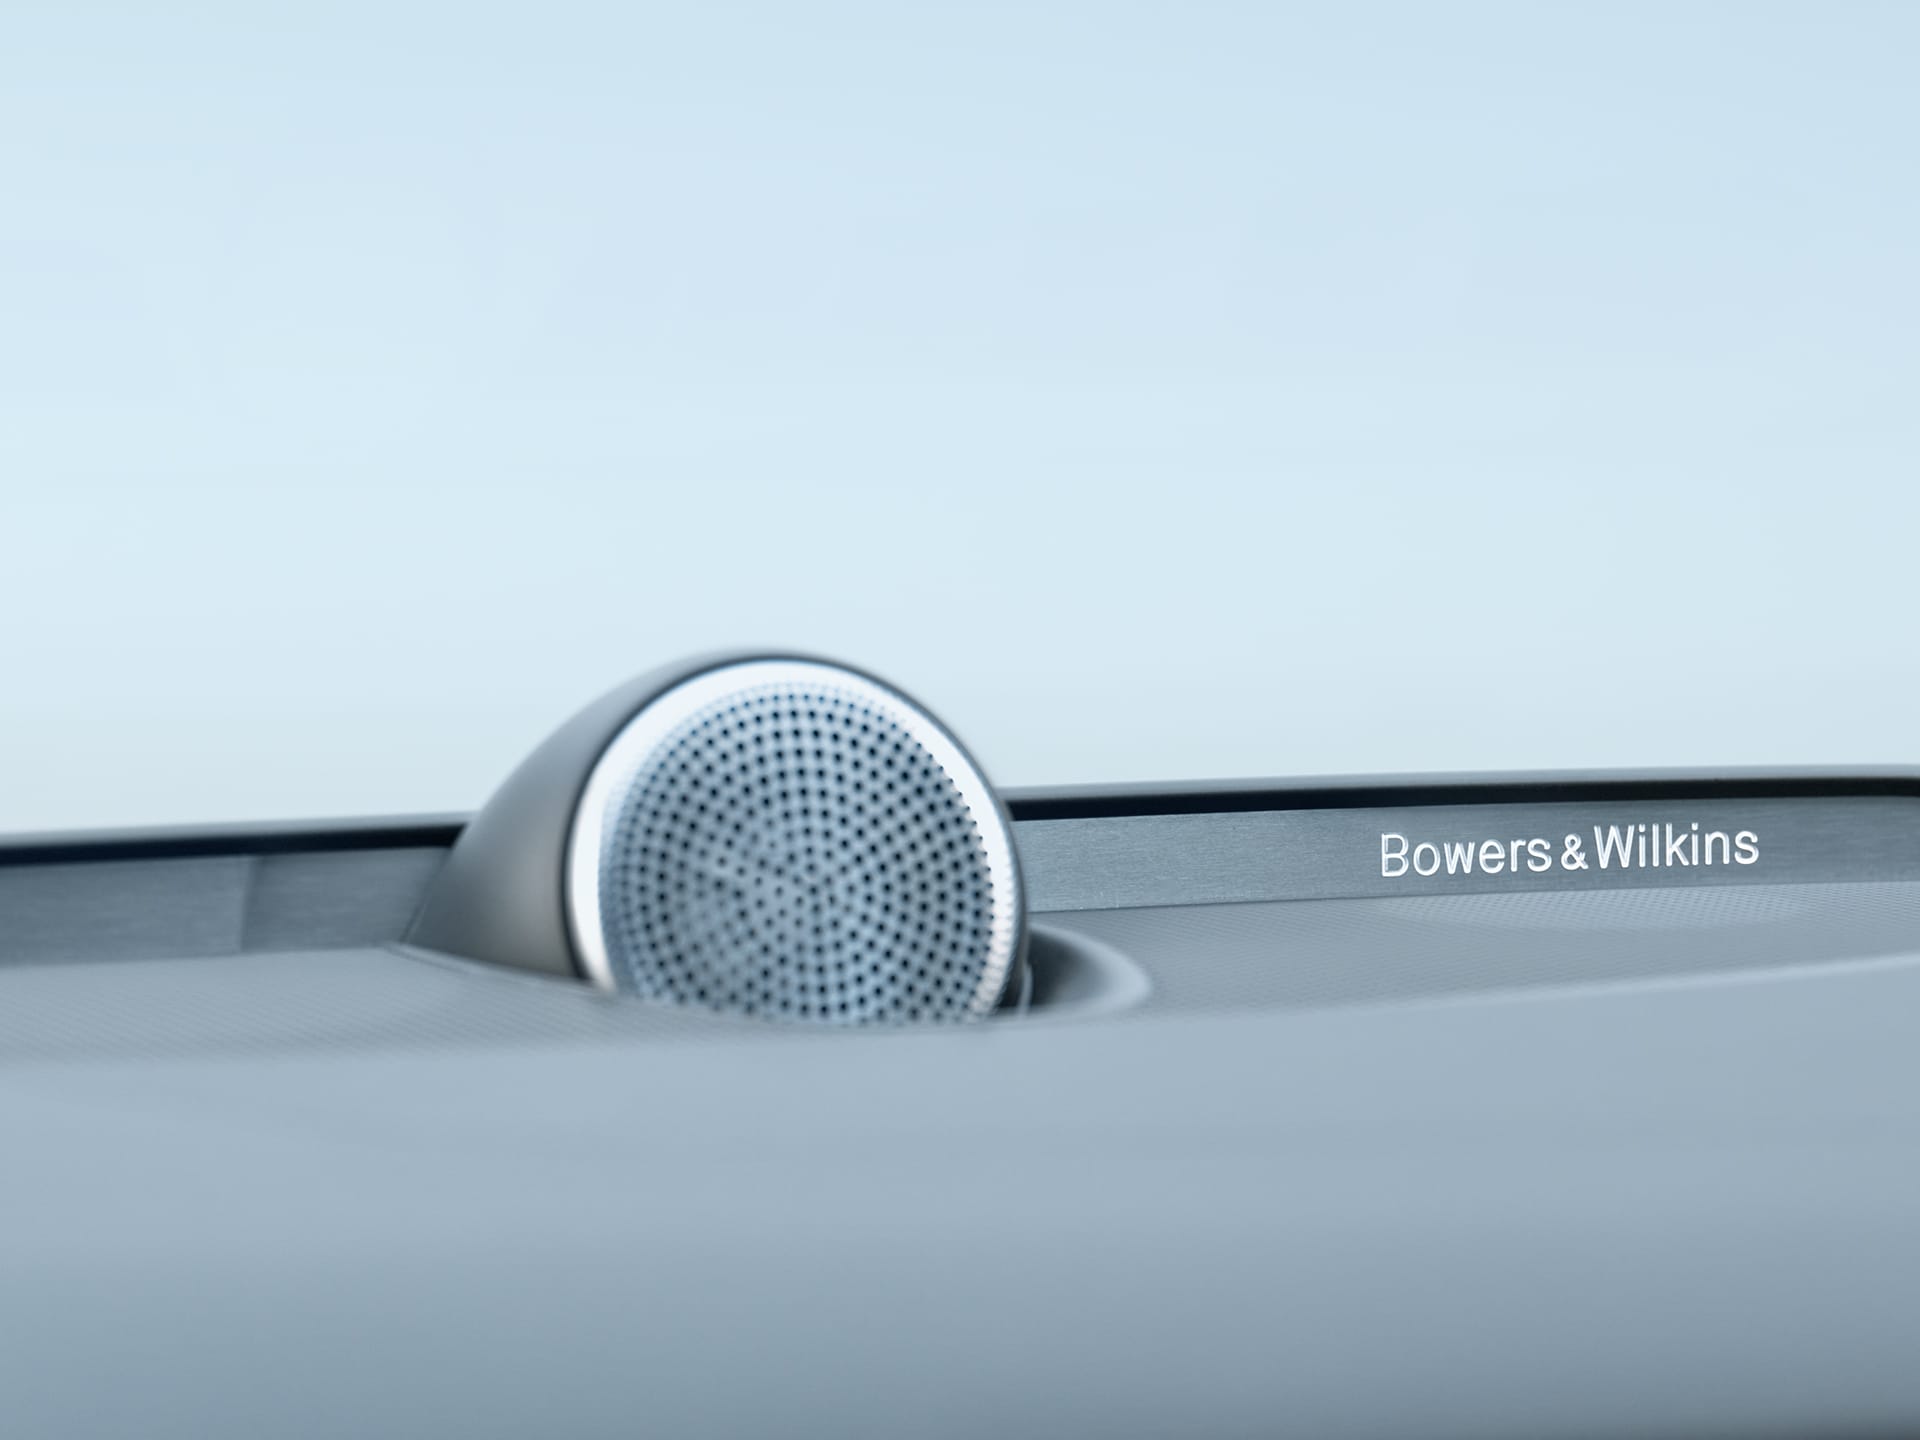 Enceintes Bowers & Wilkins à l'intérieur d'une berline Volvo S60.